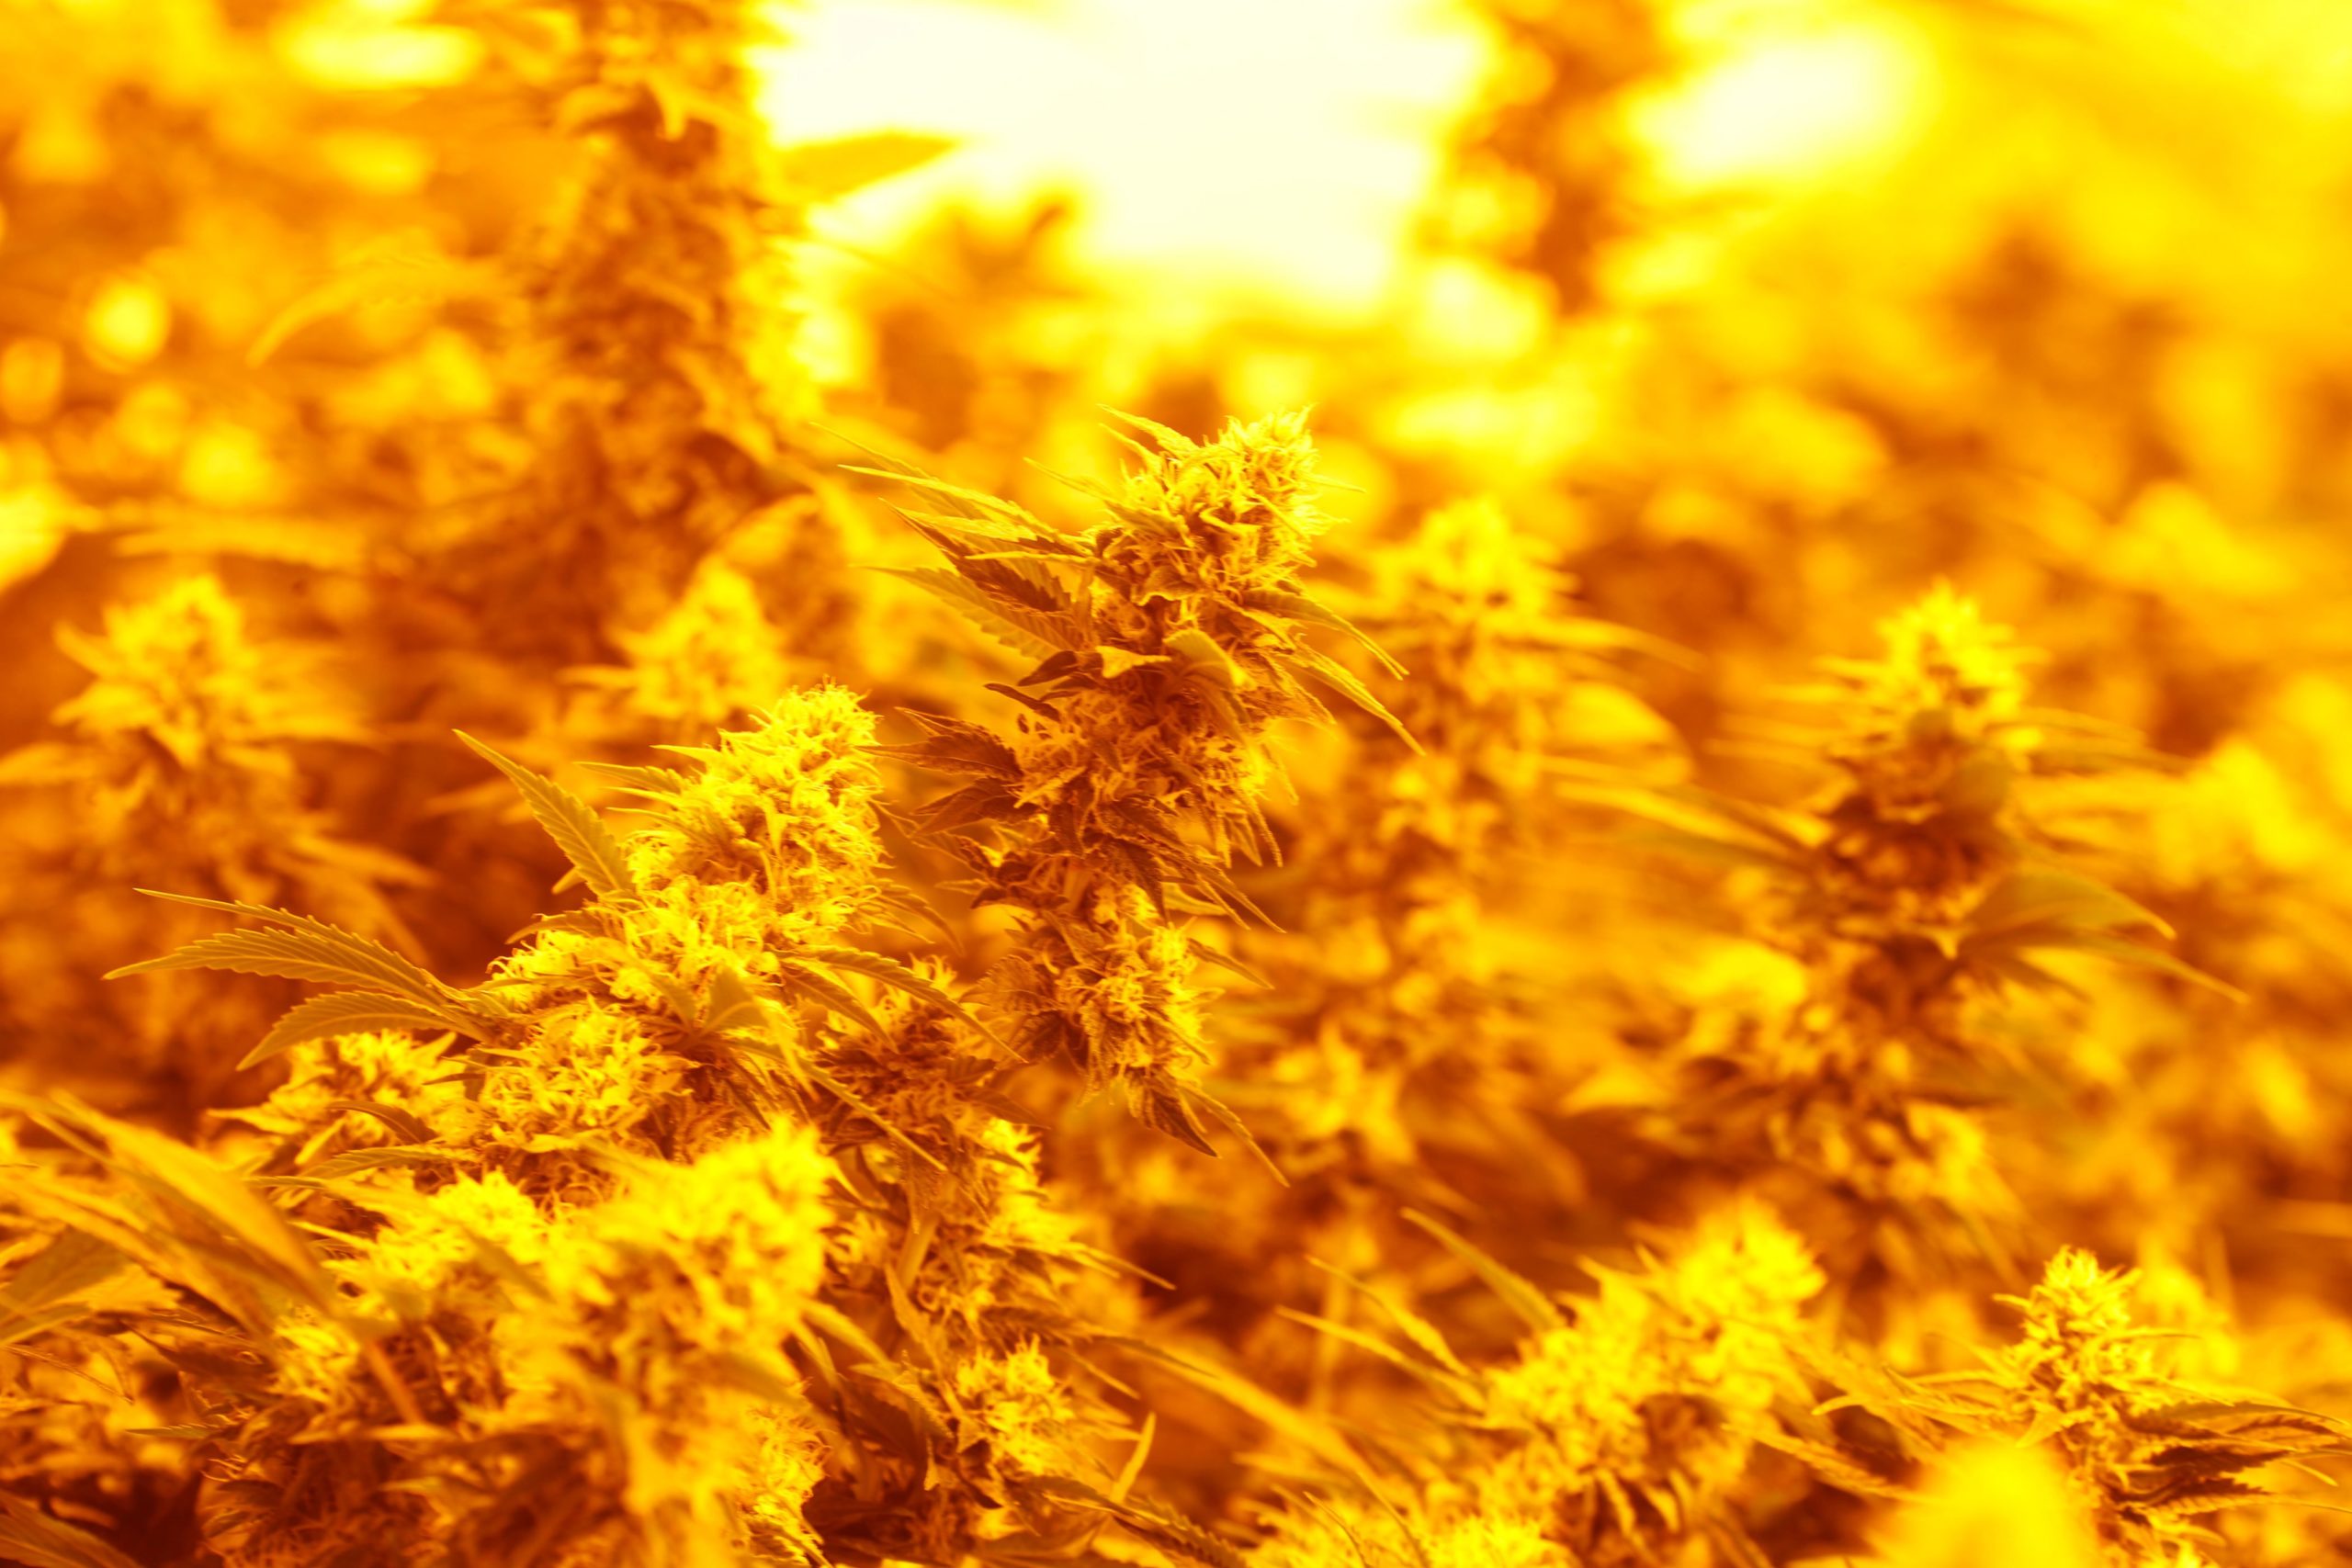 Medical marijuana sales are taking a nosedive in Colorado